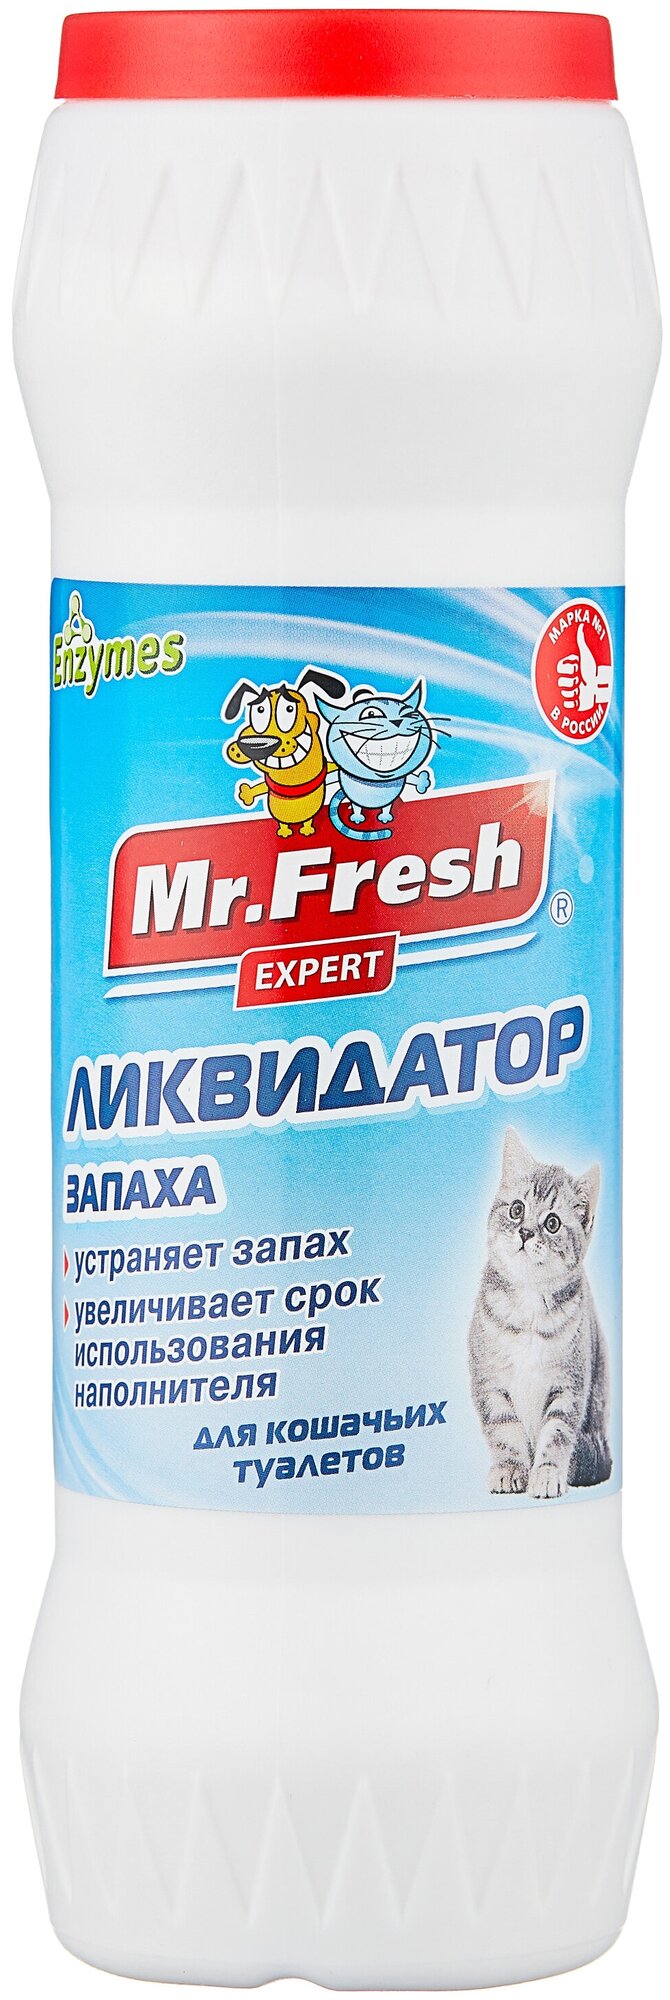 Сухой порошок Mr. Fresh ликвидатор запаха для кошачьих туалетов